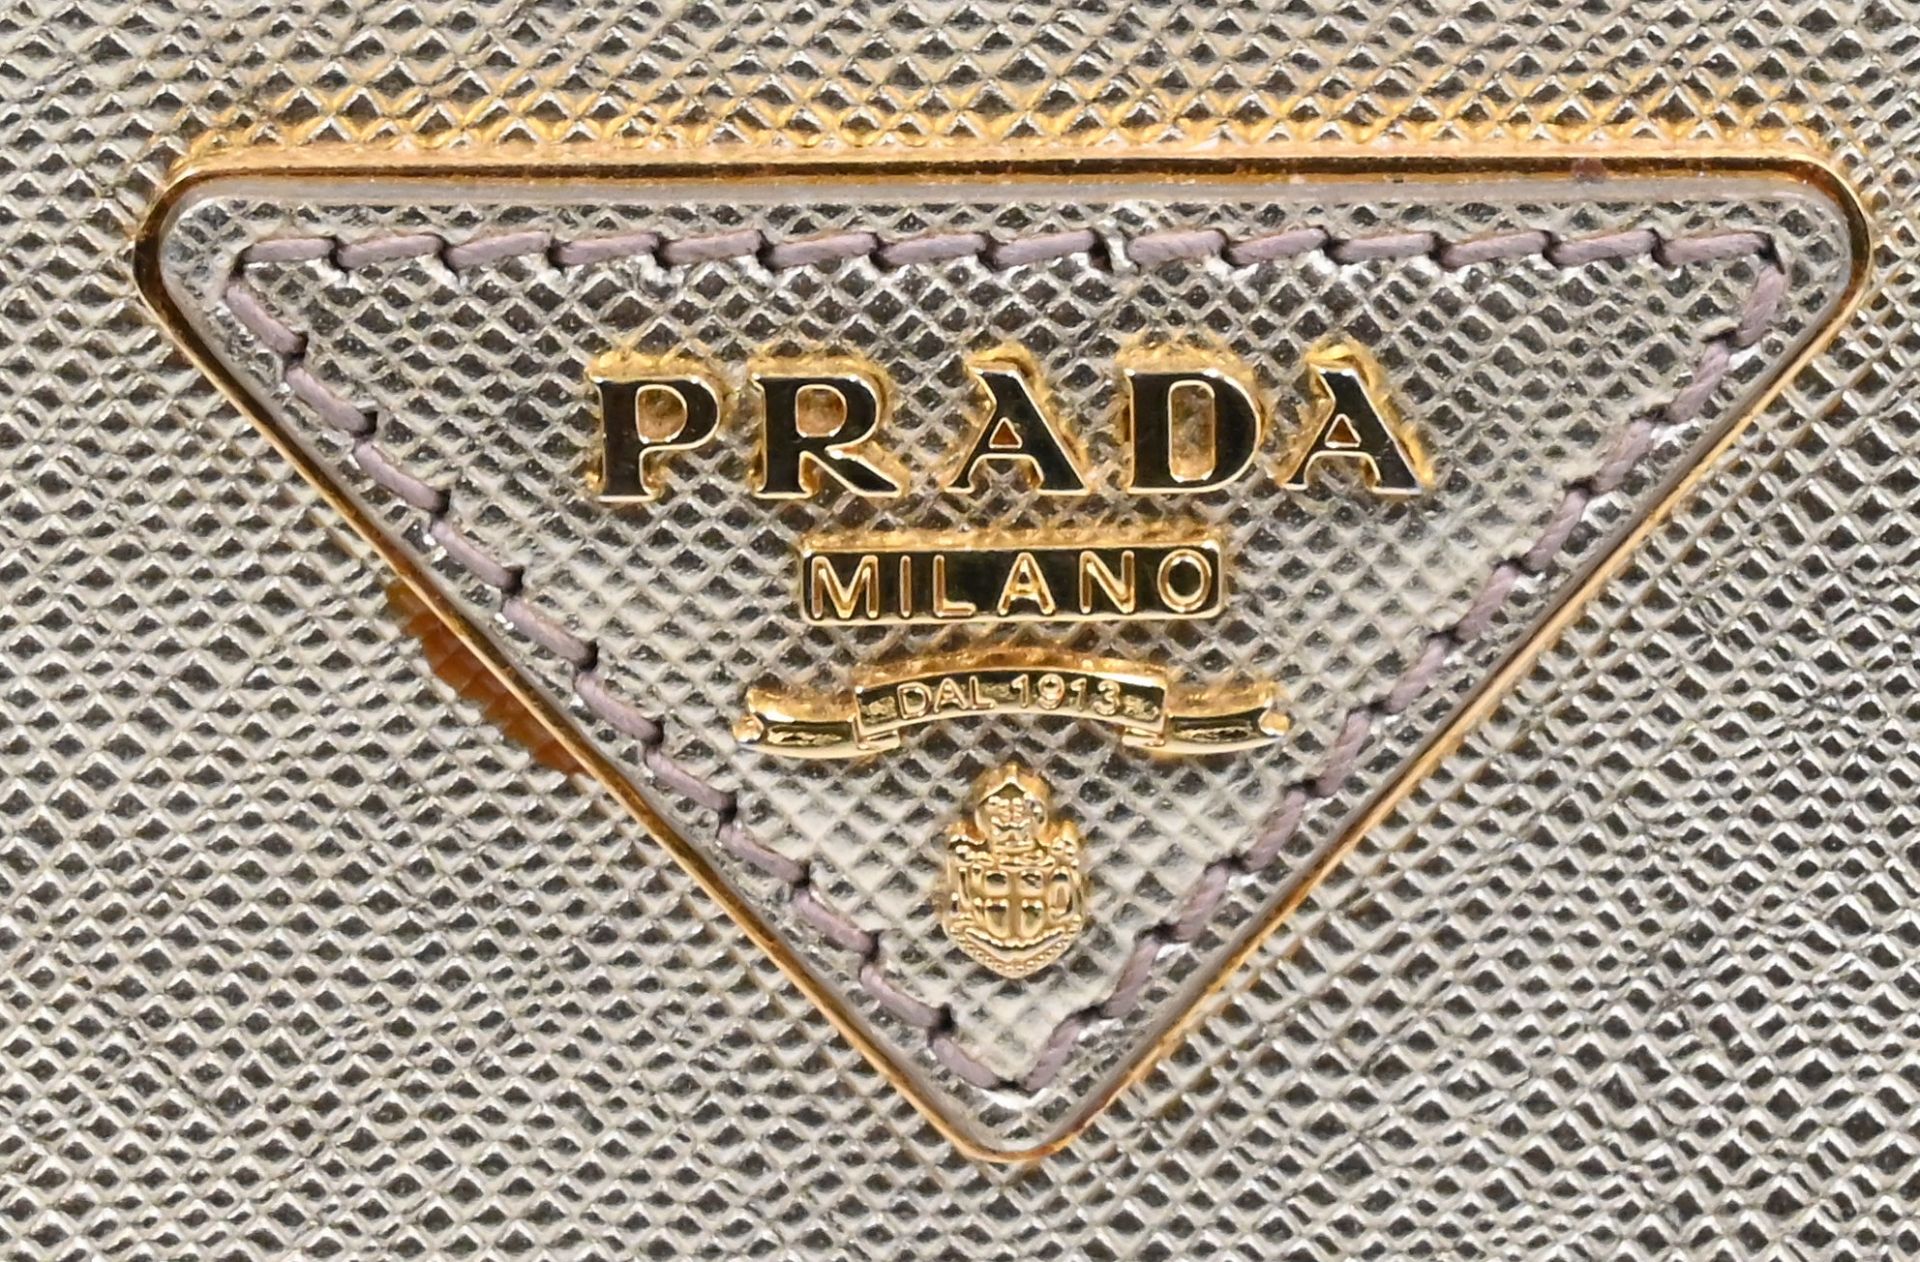 1 Handtasche PRADA, lt. Karte gekauft 2015: Saffianoleder, Farbe Platino, Schulterriemen, Staubbeute - Bild 2 aus 3